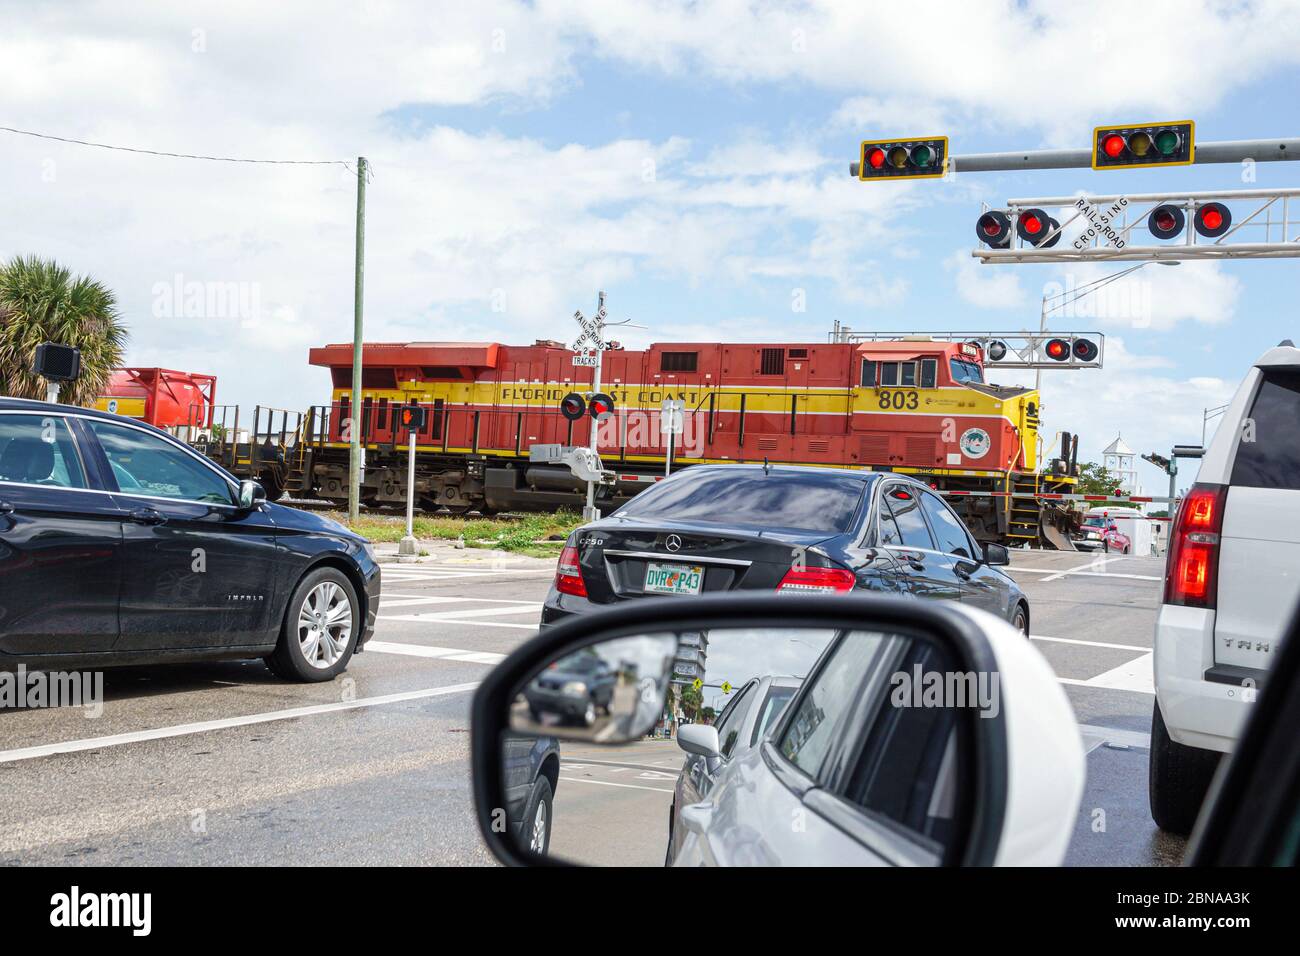 Miami Florida, las puertas del cruce del ferrocarril por el tren que pasa, los vehículos de tráfico parado los coches que esperan, East Coast Railway, locomotora roja, los visitantes viajan trave Foto de stock